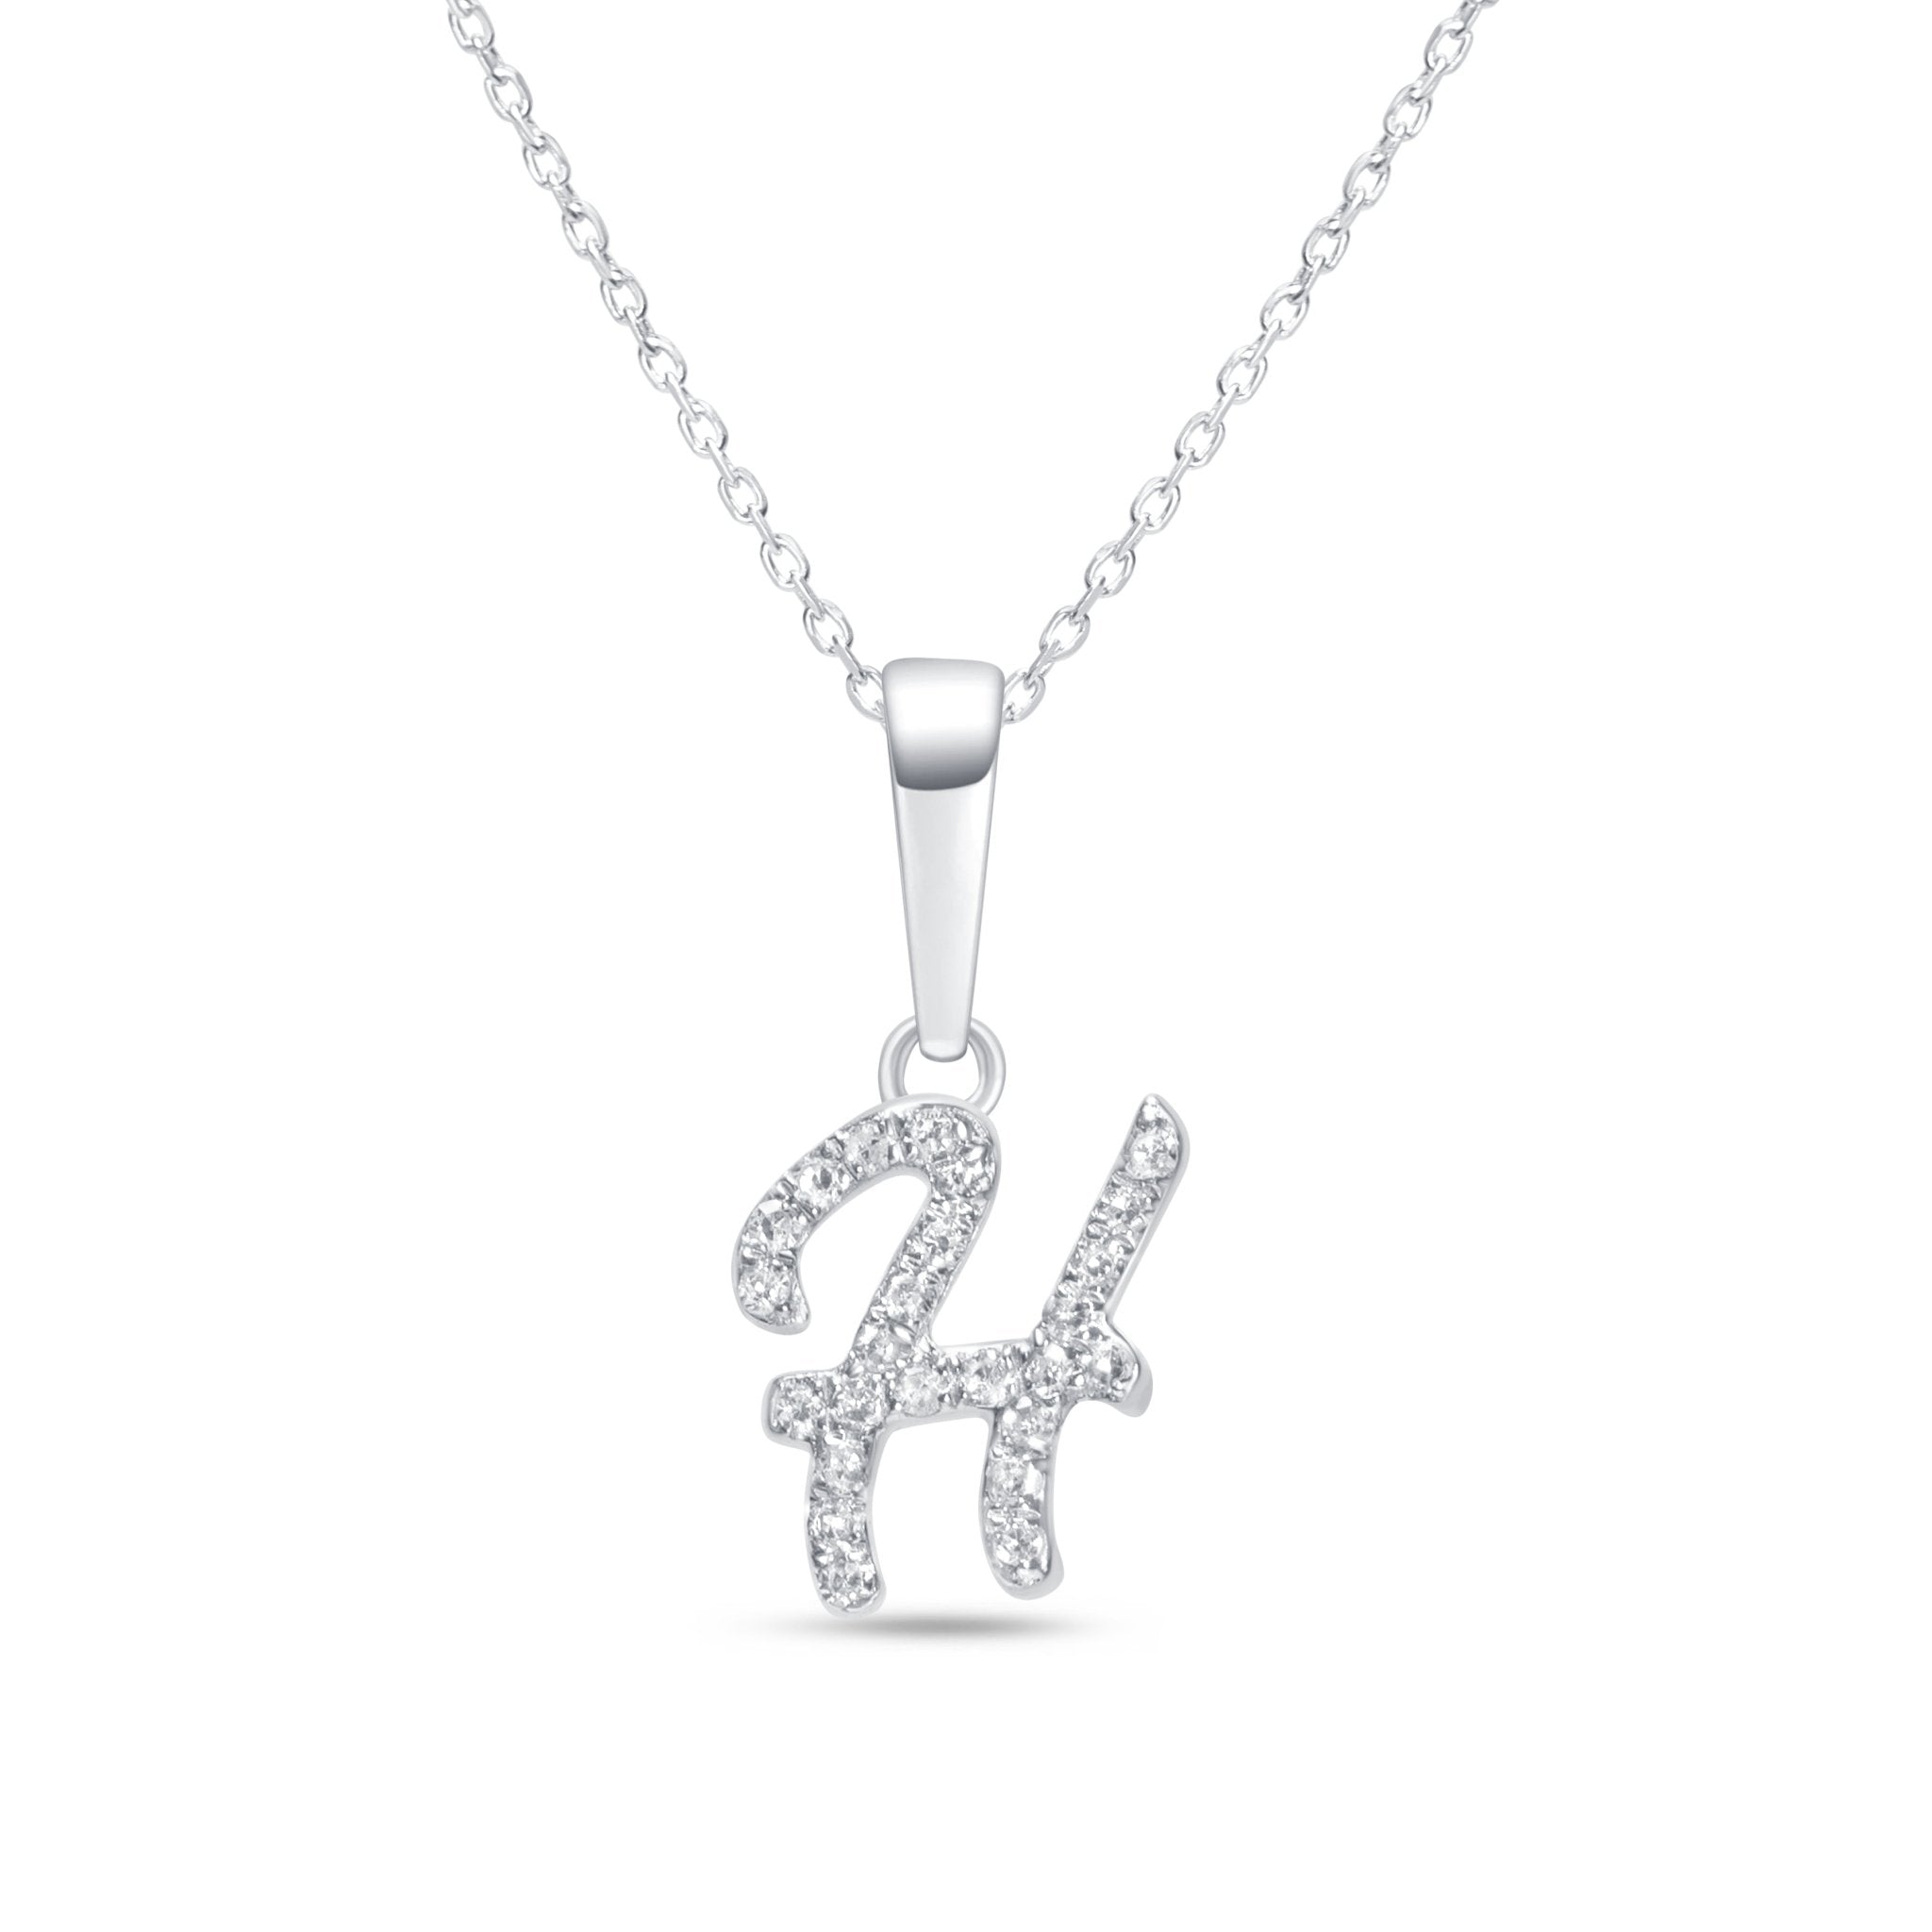 Cursive Diamond Initial Necklace - H Necklaces Estella Collection #product_description# 18557 14k Diamond Gemstone #tag4# #tag5# #tag6# #tag7# #tag8# #tag9# #tag10# 14k White Gold